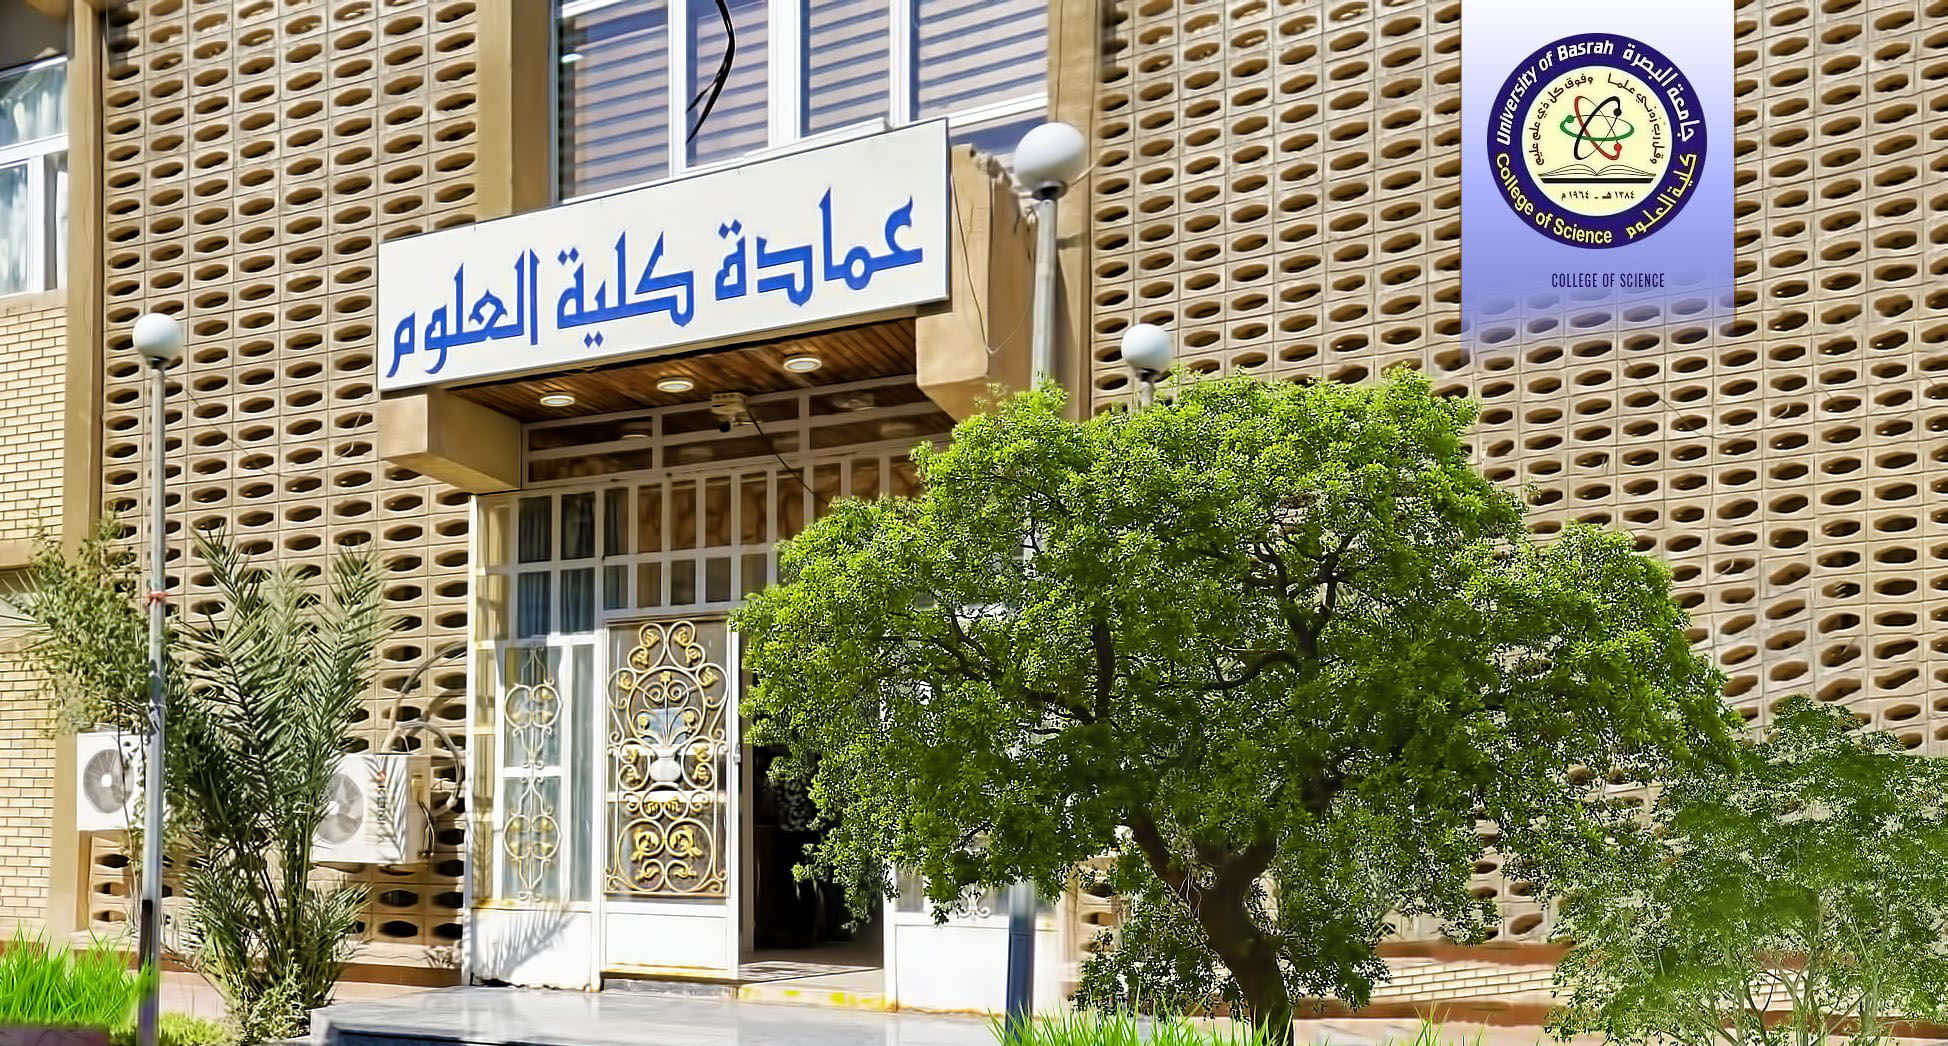 University of Basrah 